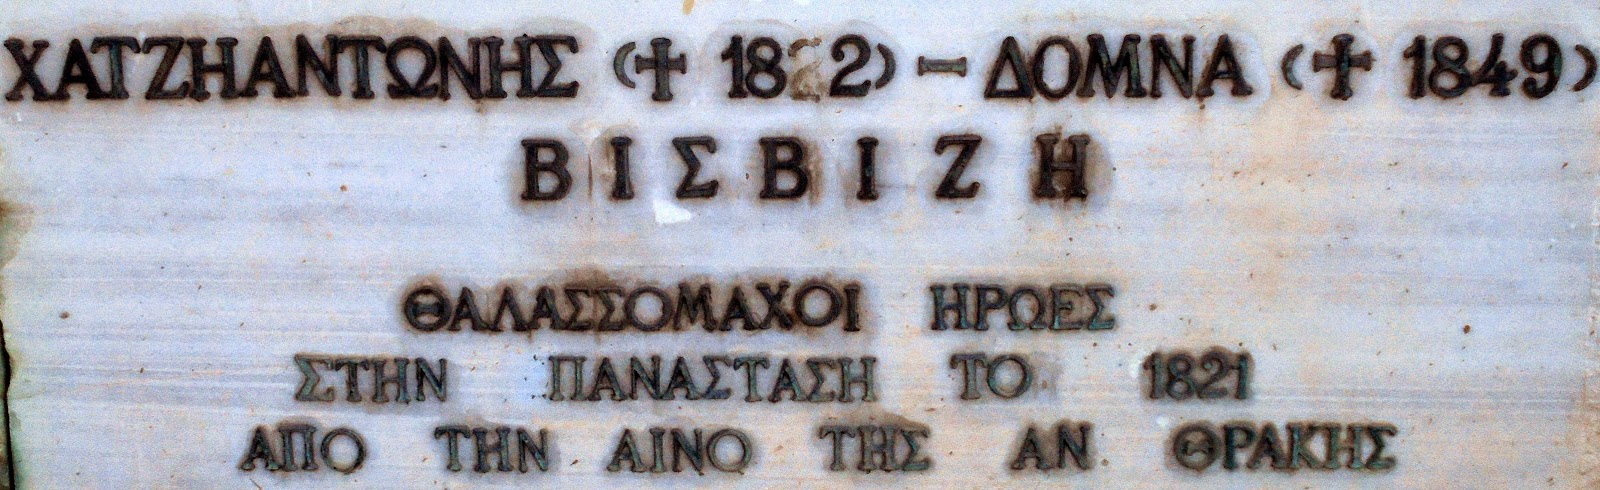 το μνημείο των Χατζηαντώνη και Δόμνας Βισβίζη στη νέα παραλία Θεσσαλονίκης